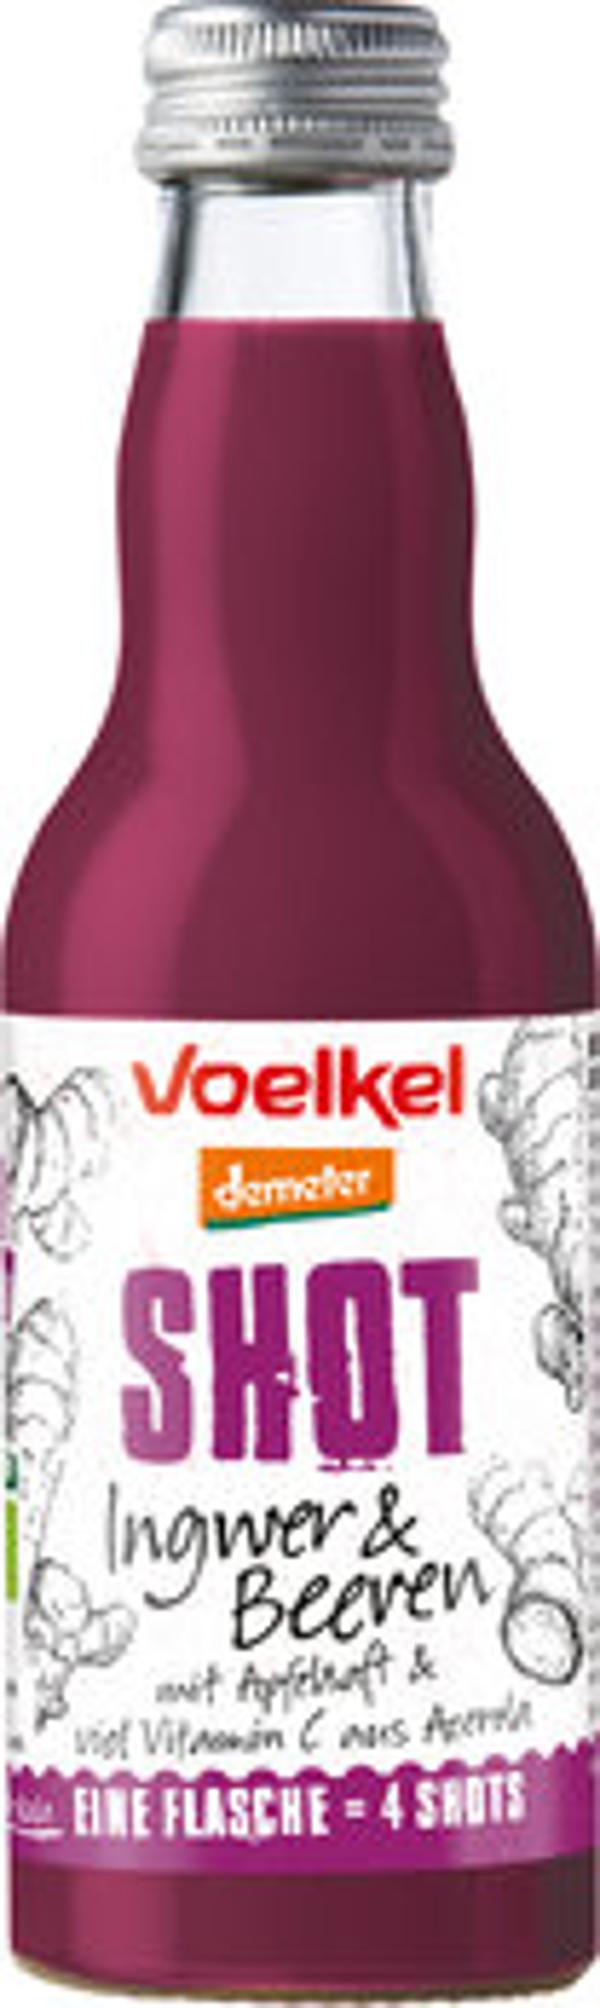 Produktfoto zu Voelkel Shot Ingwer & Beeren 0,2l